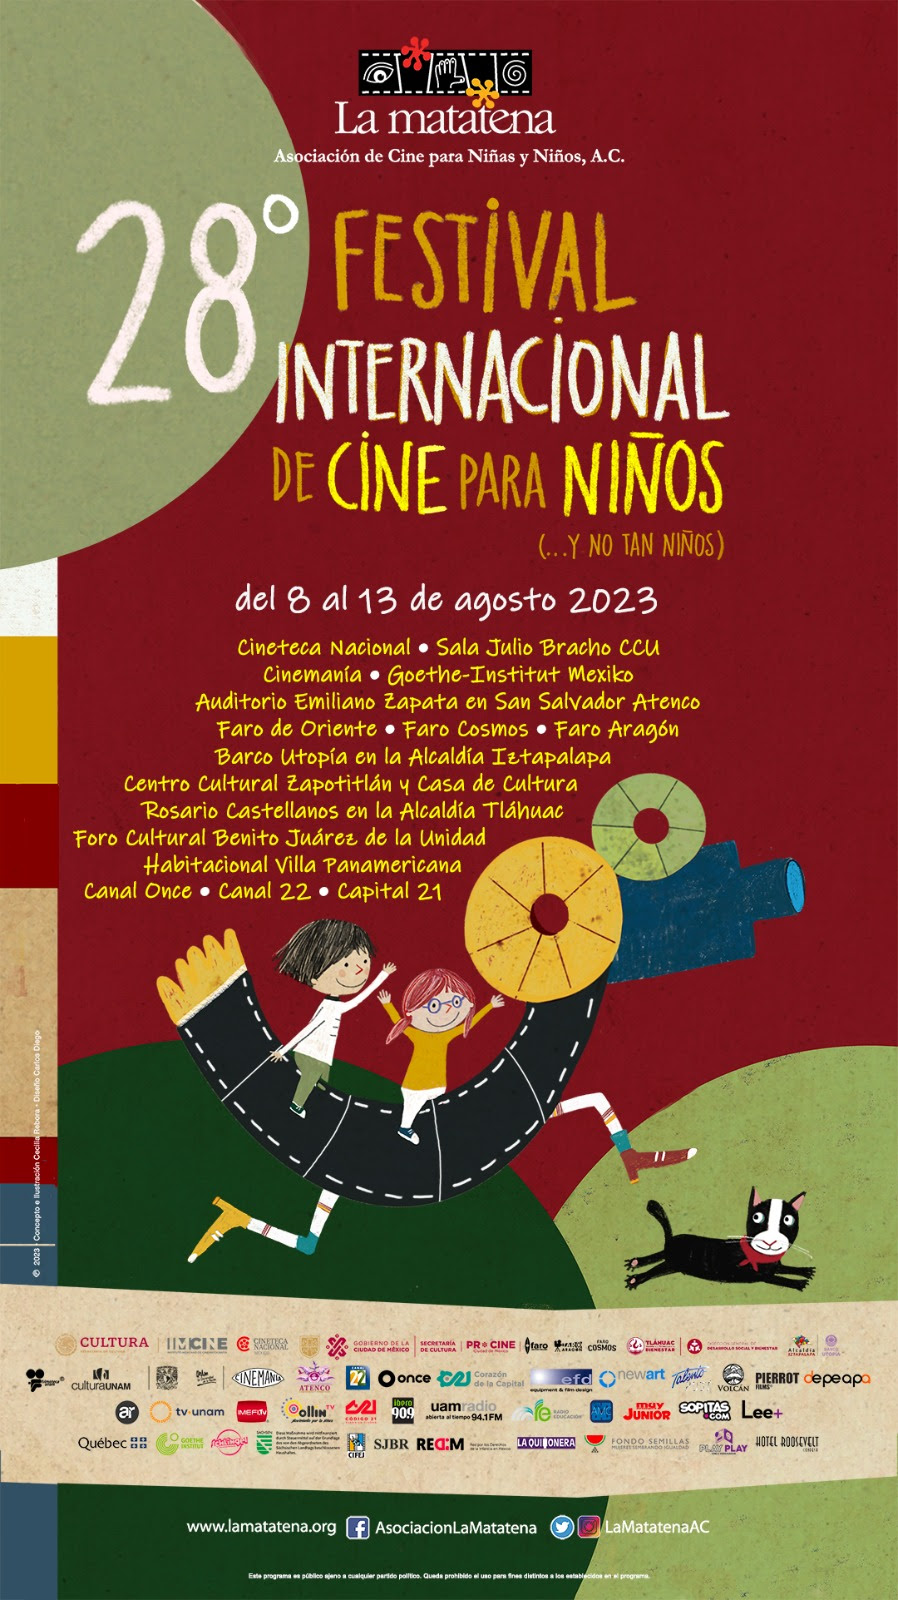 Arran el 28° Festival Internacional de Cine para Niños (… Y no tan niños)